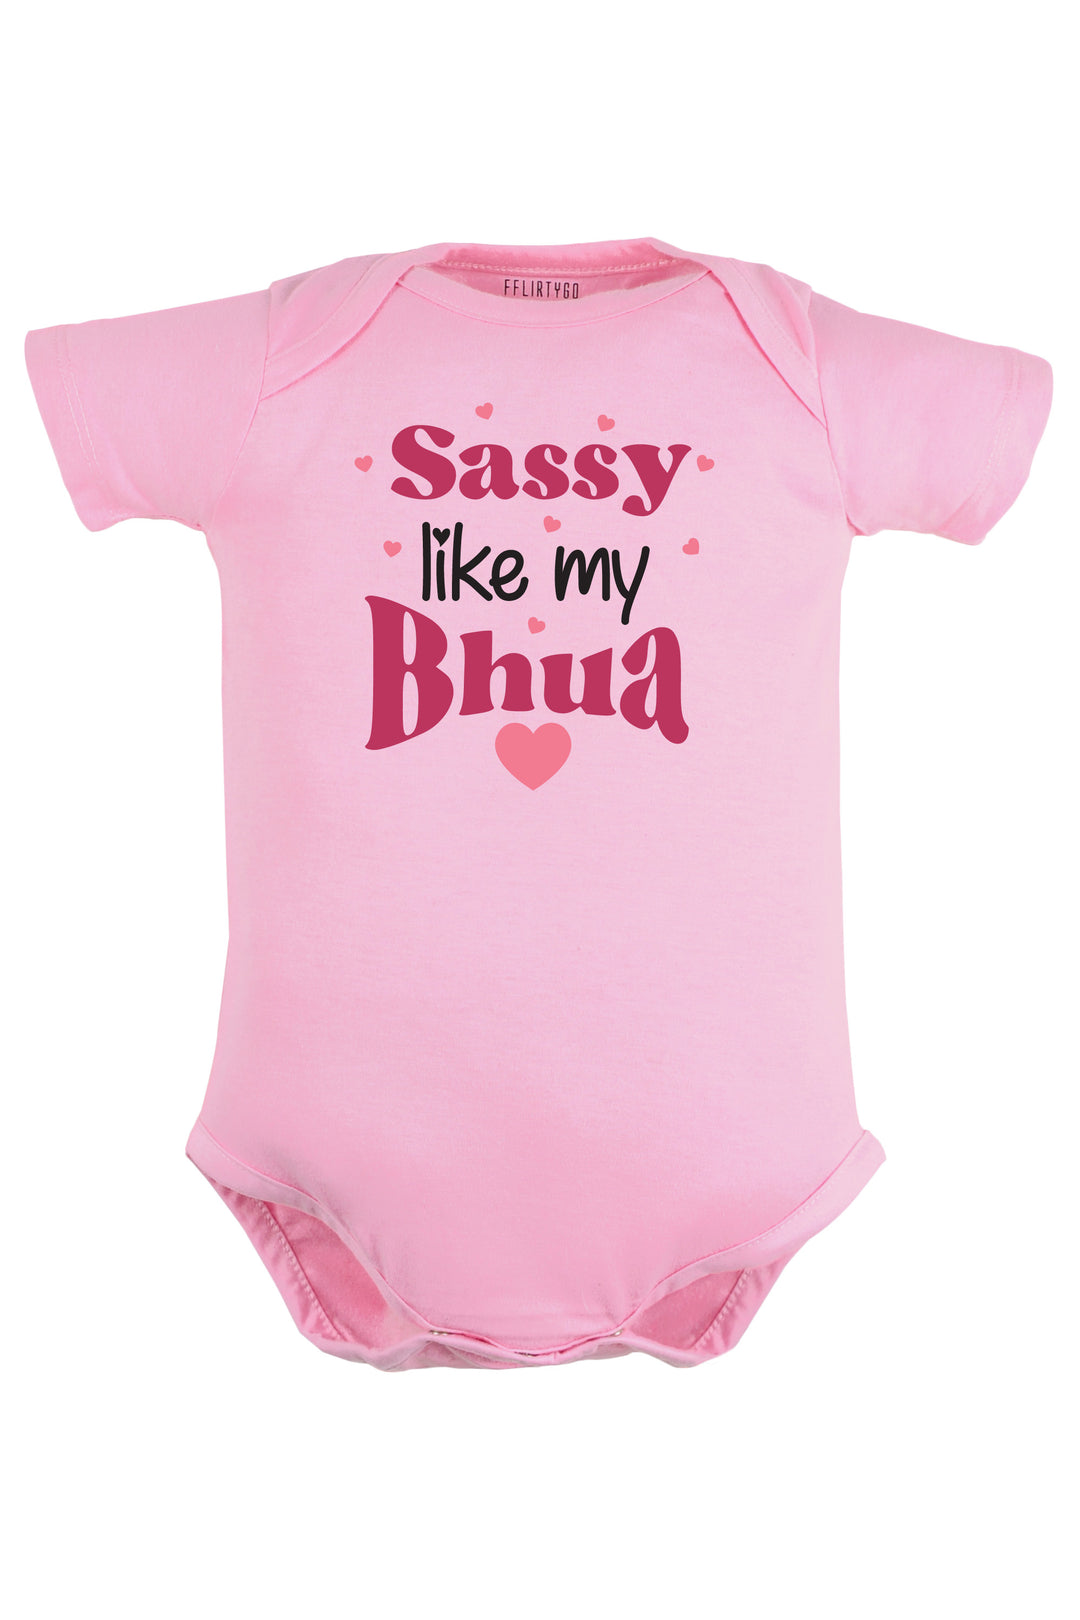 Sassy Like My Bhua Baby Romper | Onesies